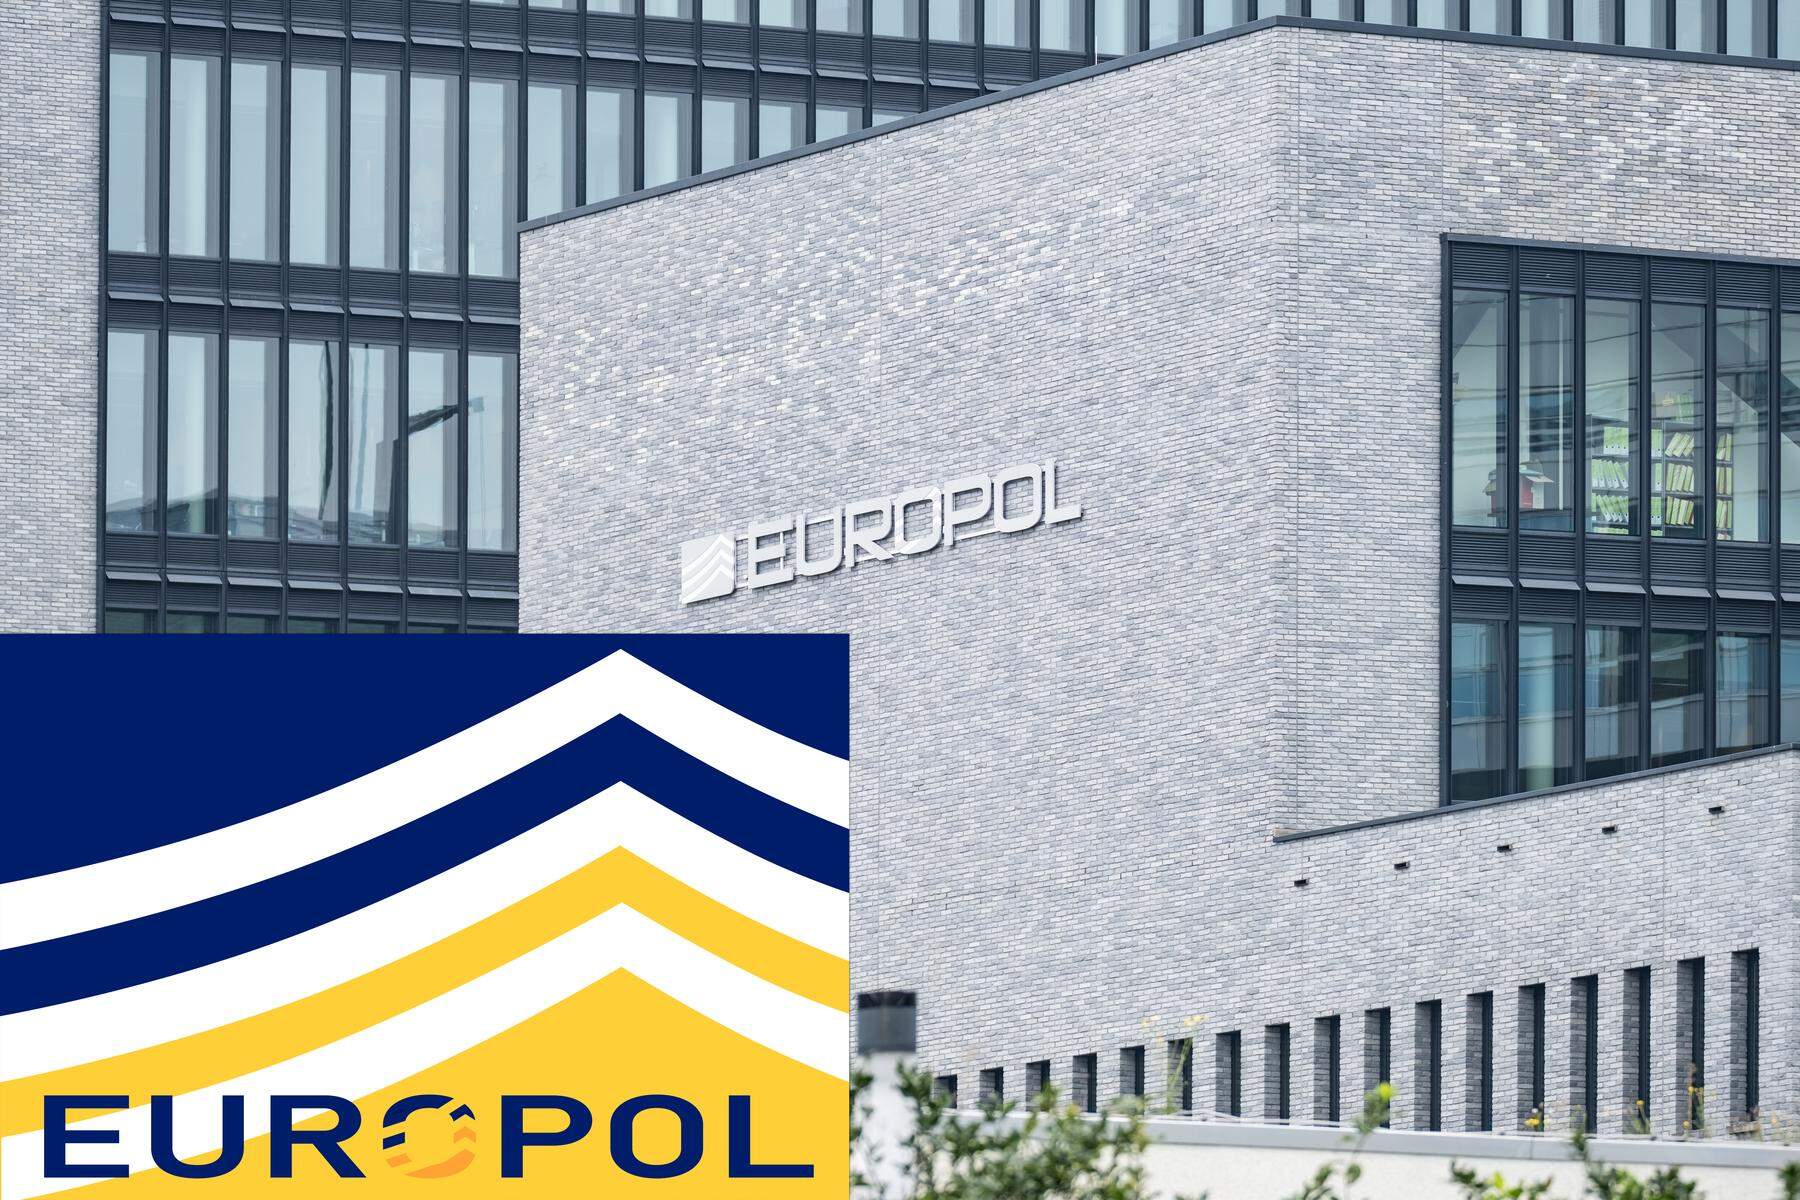 Internes Verfahren läuft: Offenbares Sicherheitsleck bei europäischer Polizeiagentur Europol